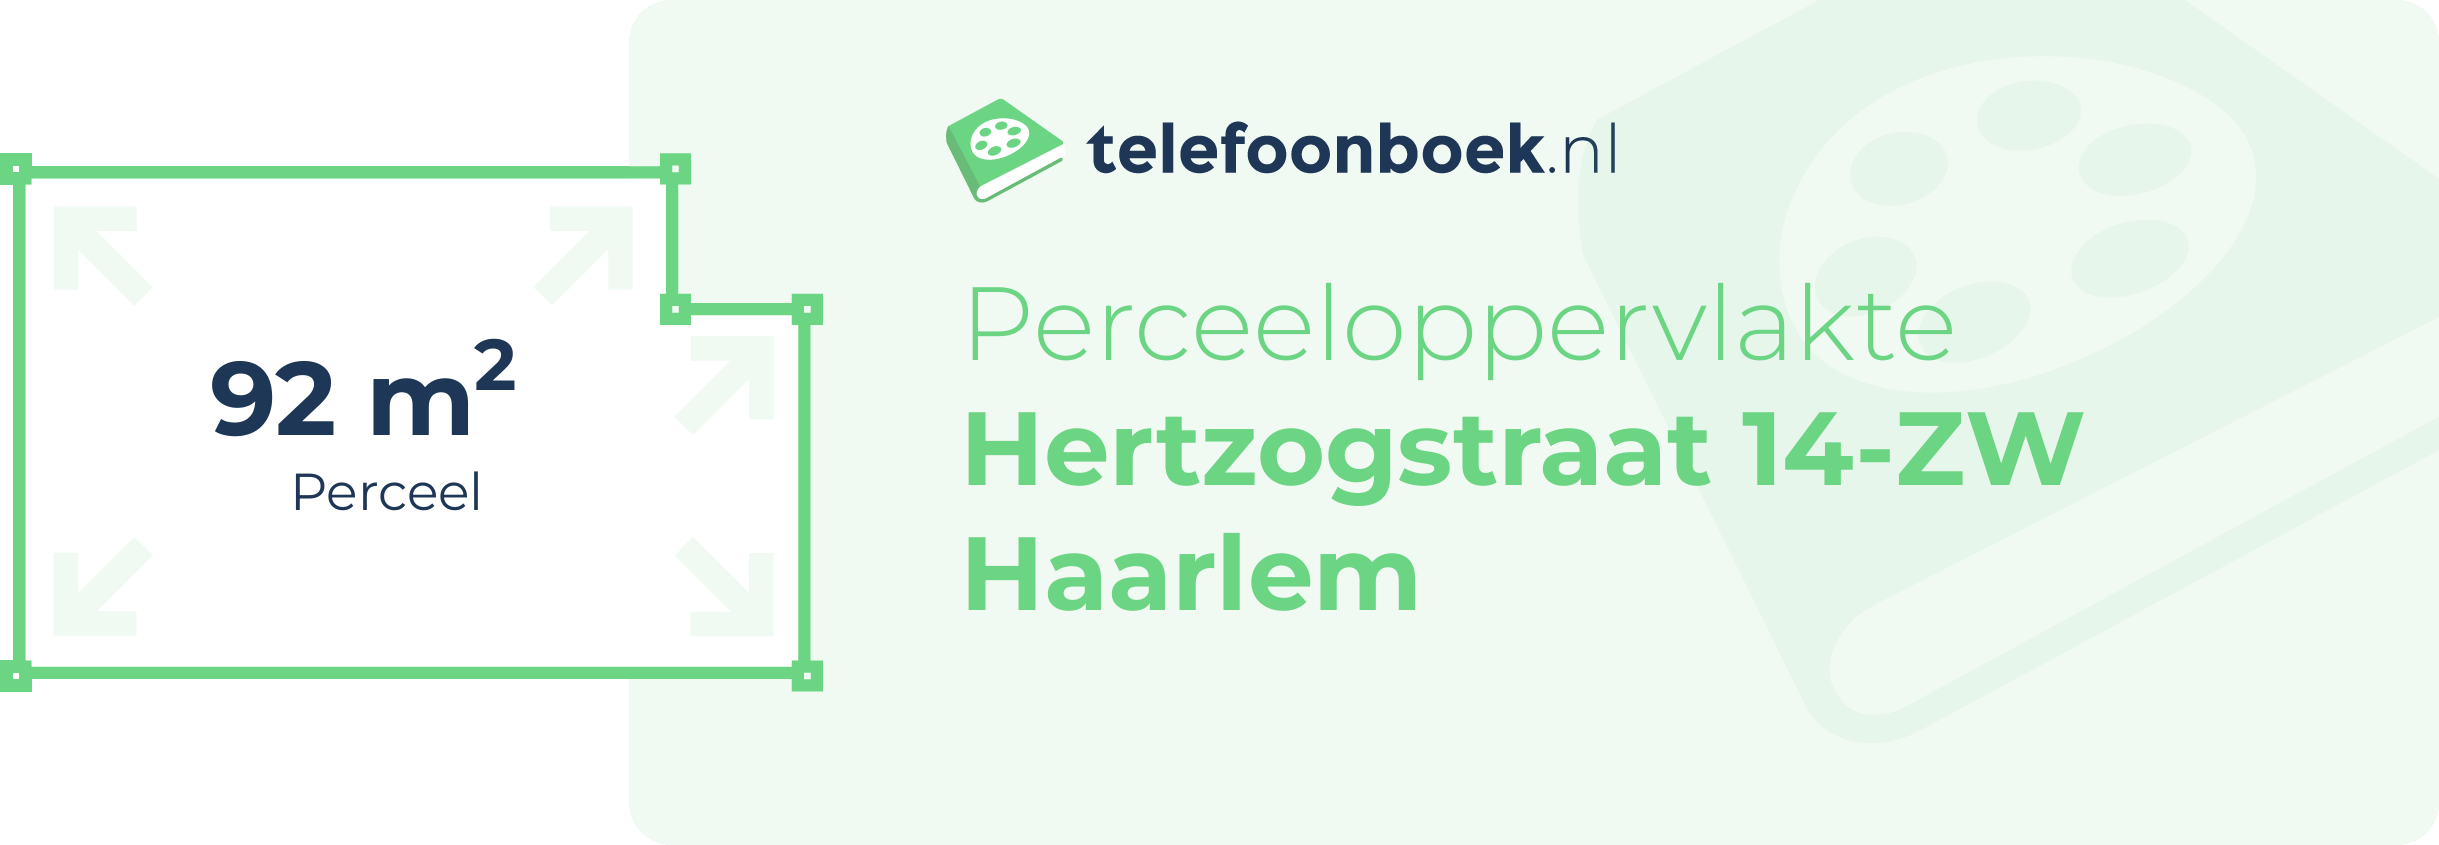 Perceeloppervlakte Hertzogstraat 14-ZW Haarlem